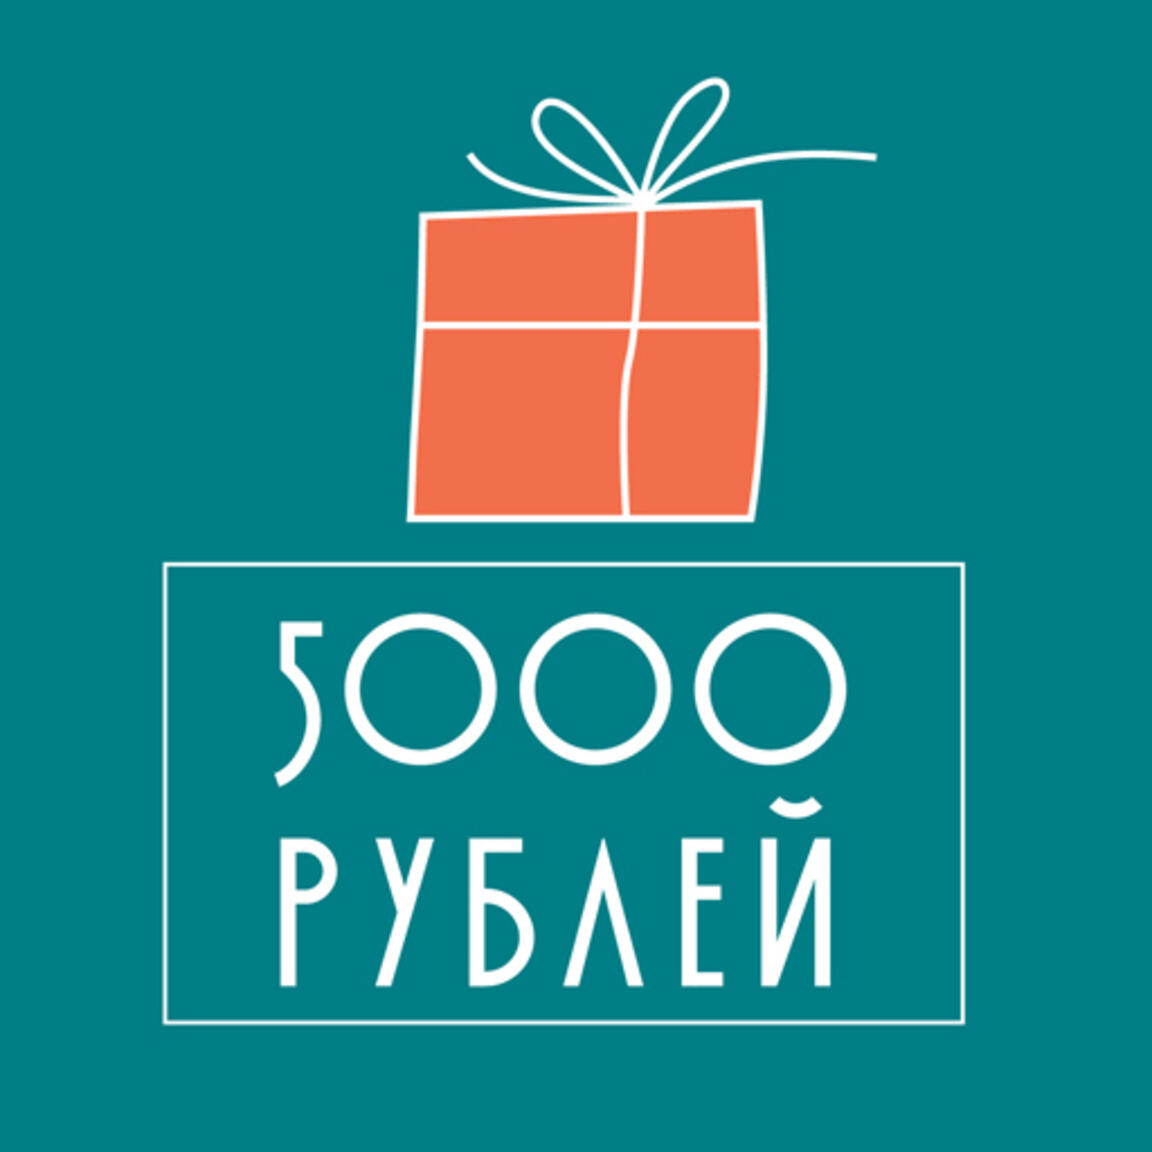 Сертификат 5000 руб